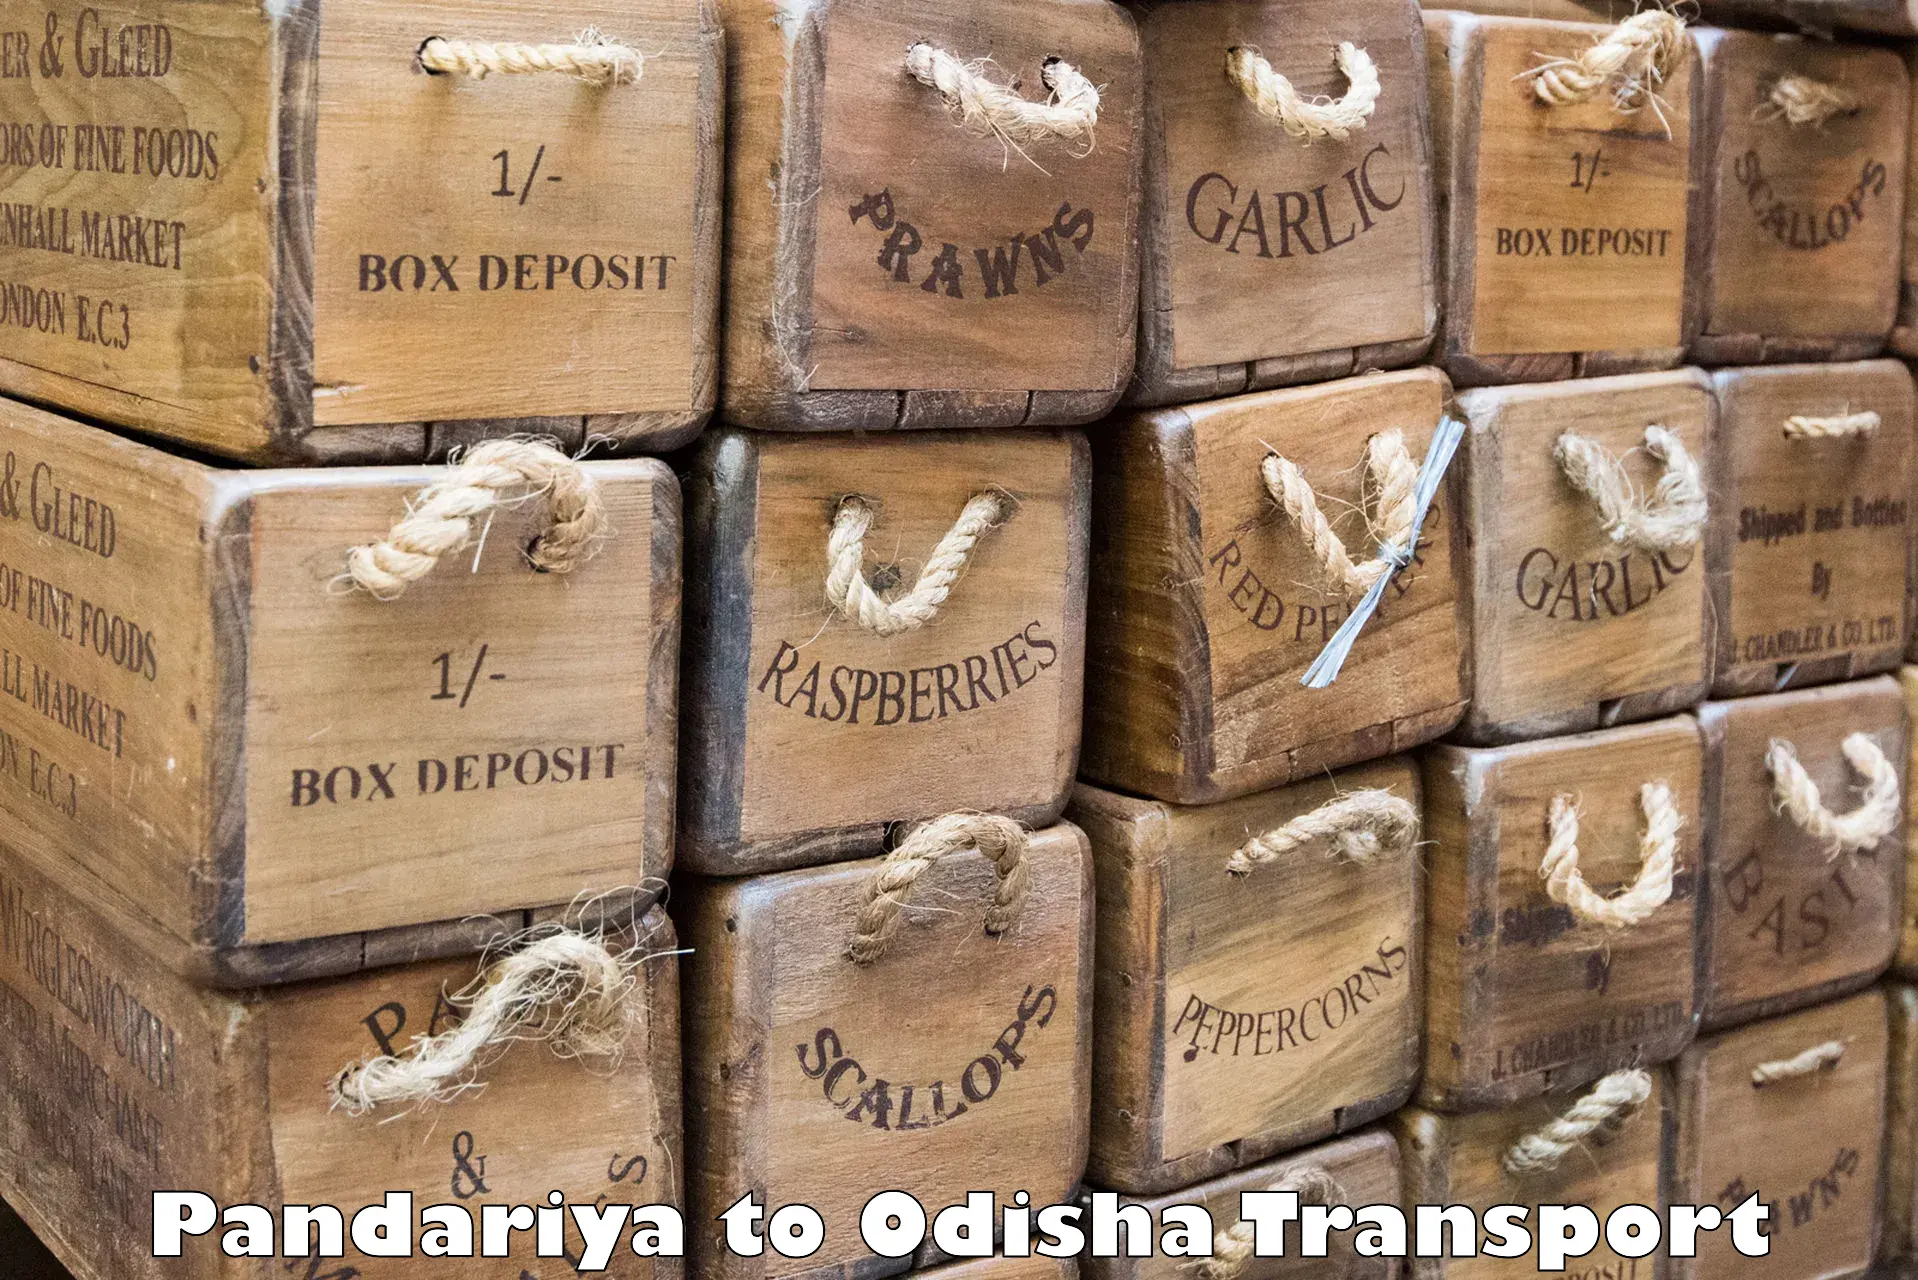 Nearest transport service Pandariya to Raj Berhampur